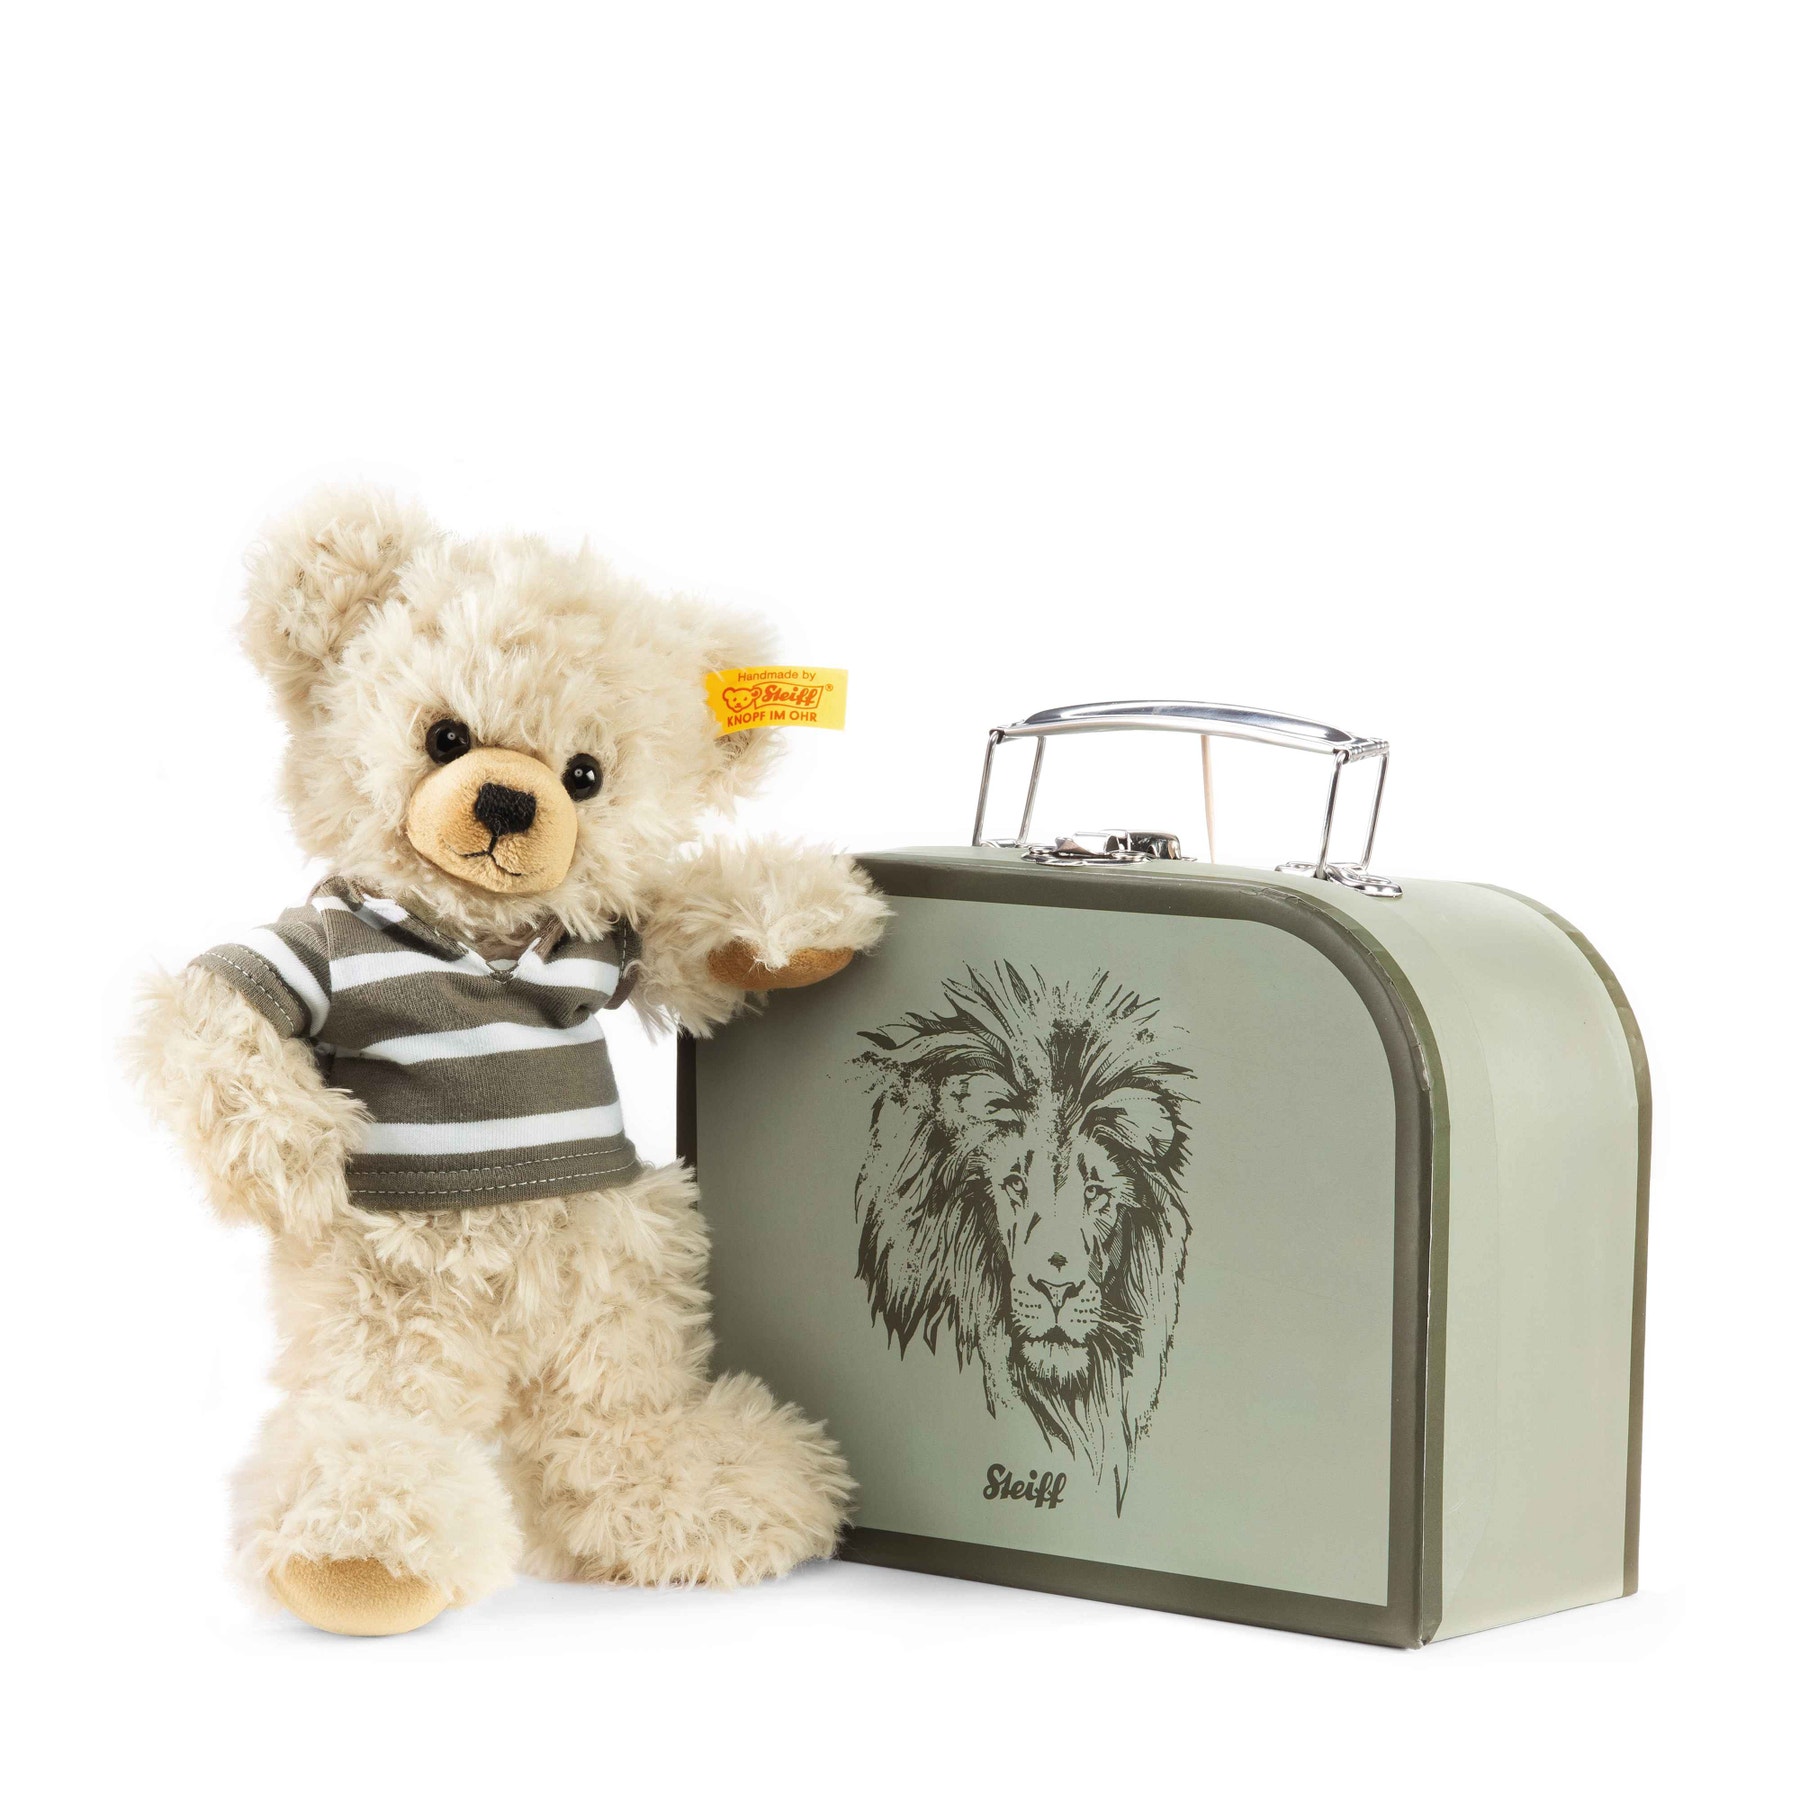 Ours Teddy Lenni dans sa valise